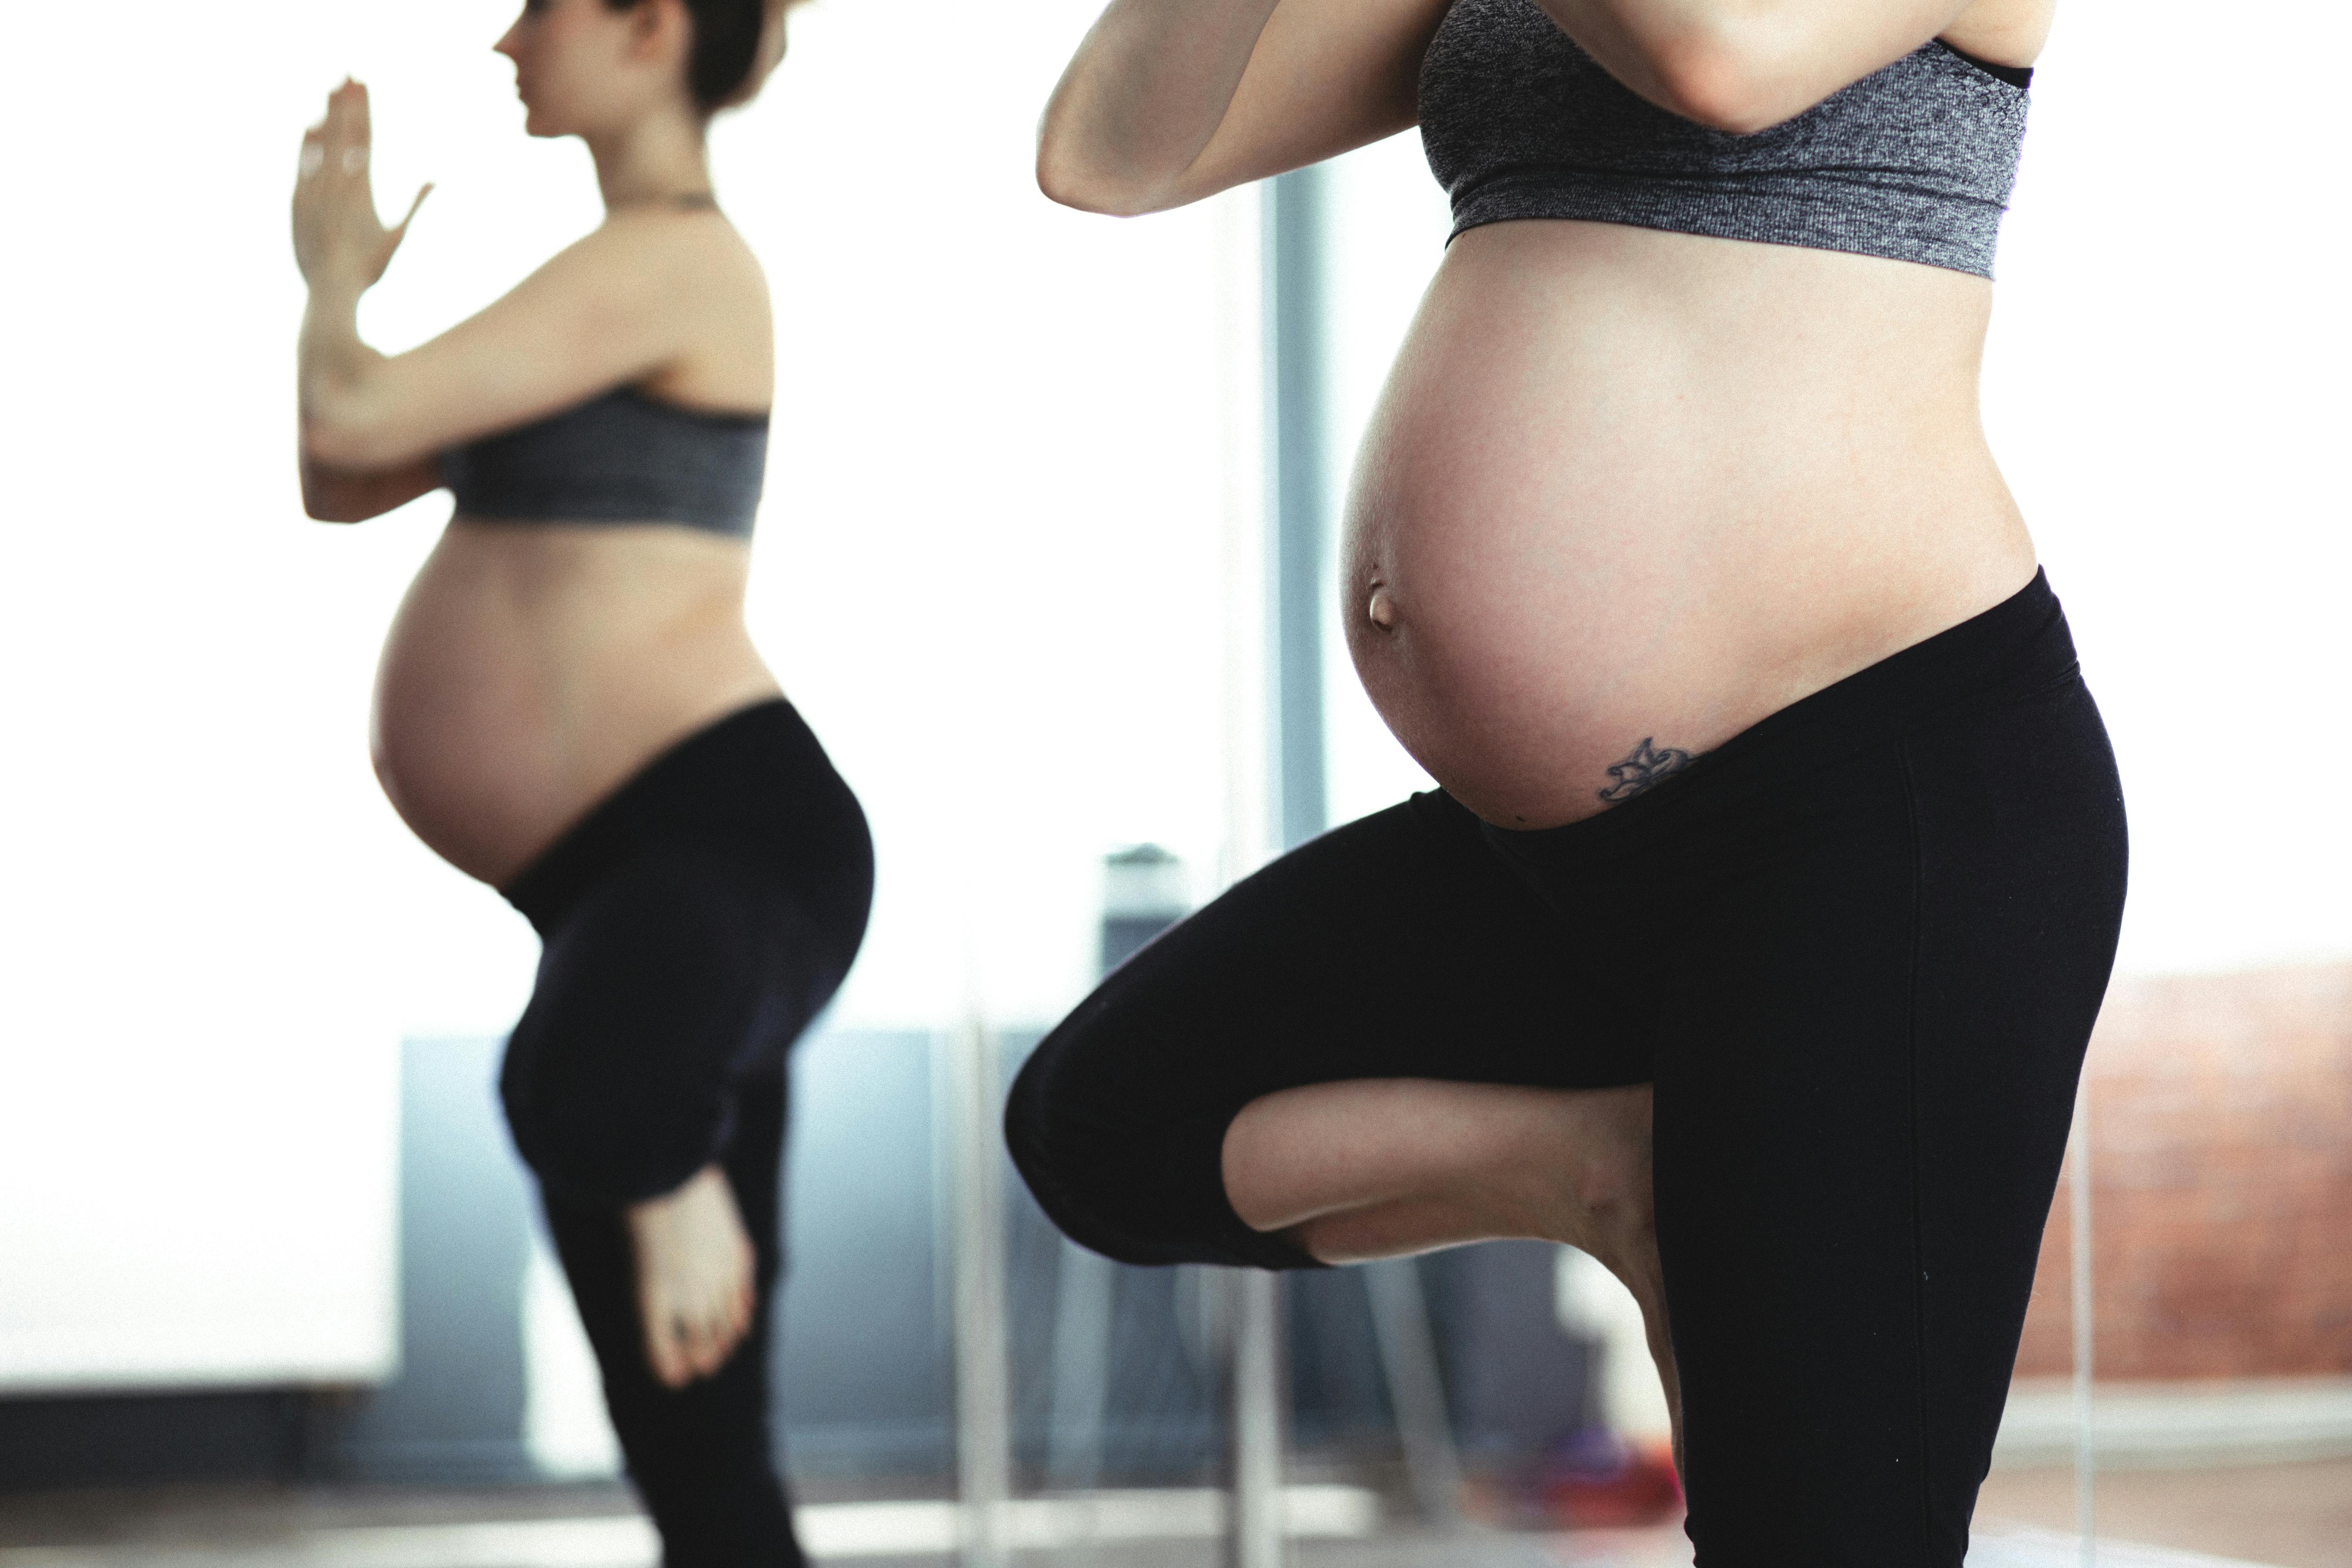 人工受孕懷孕評價,懷孕婦產科心得,推薦孕婦人工受孕